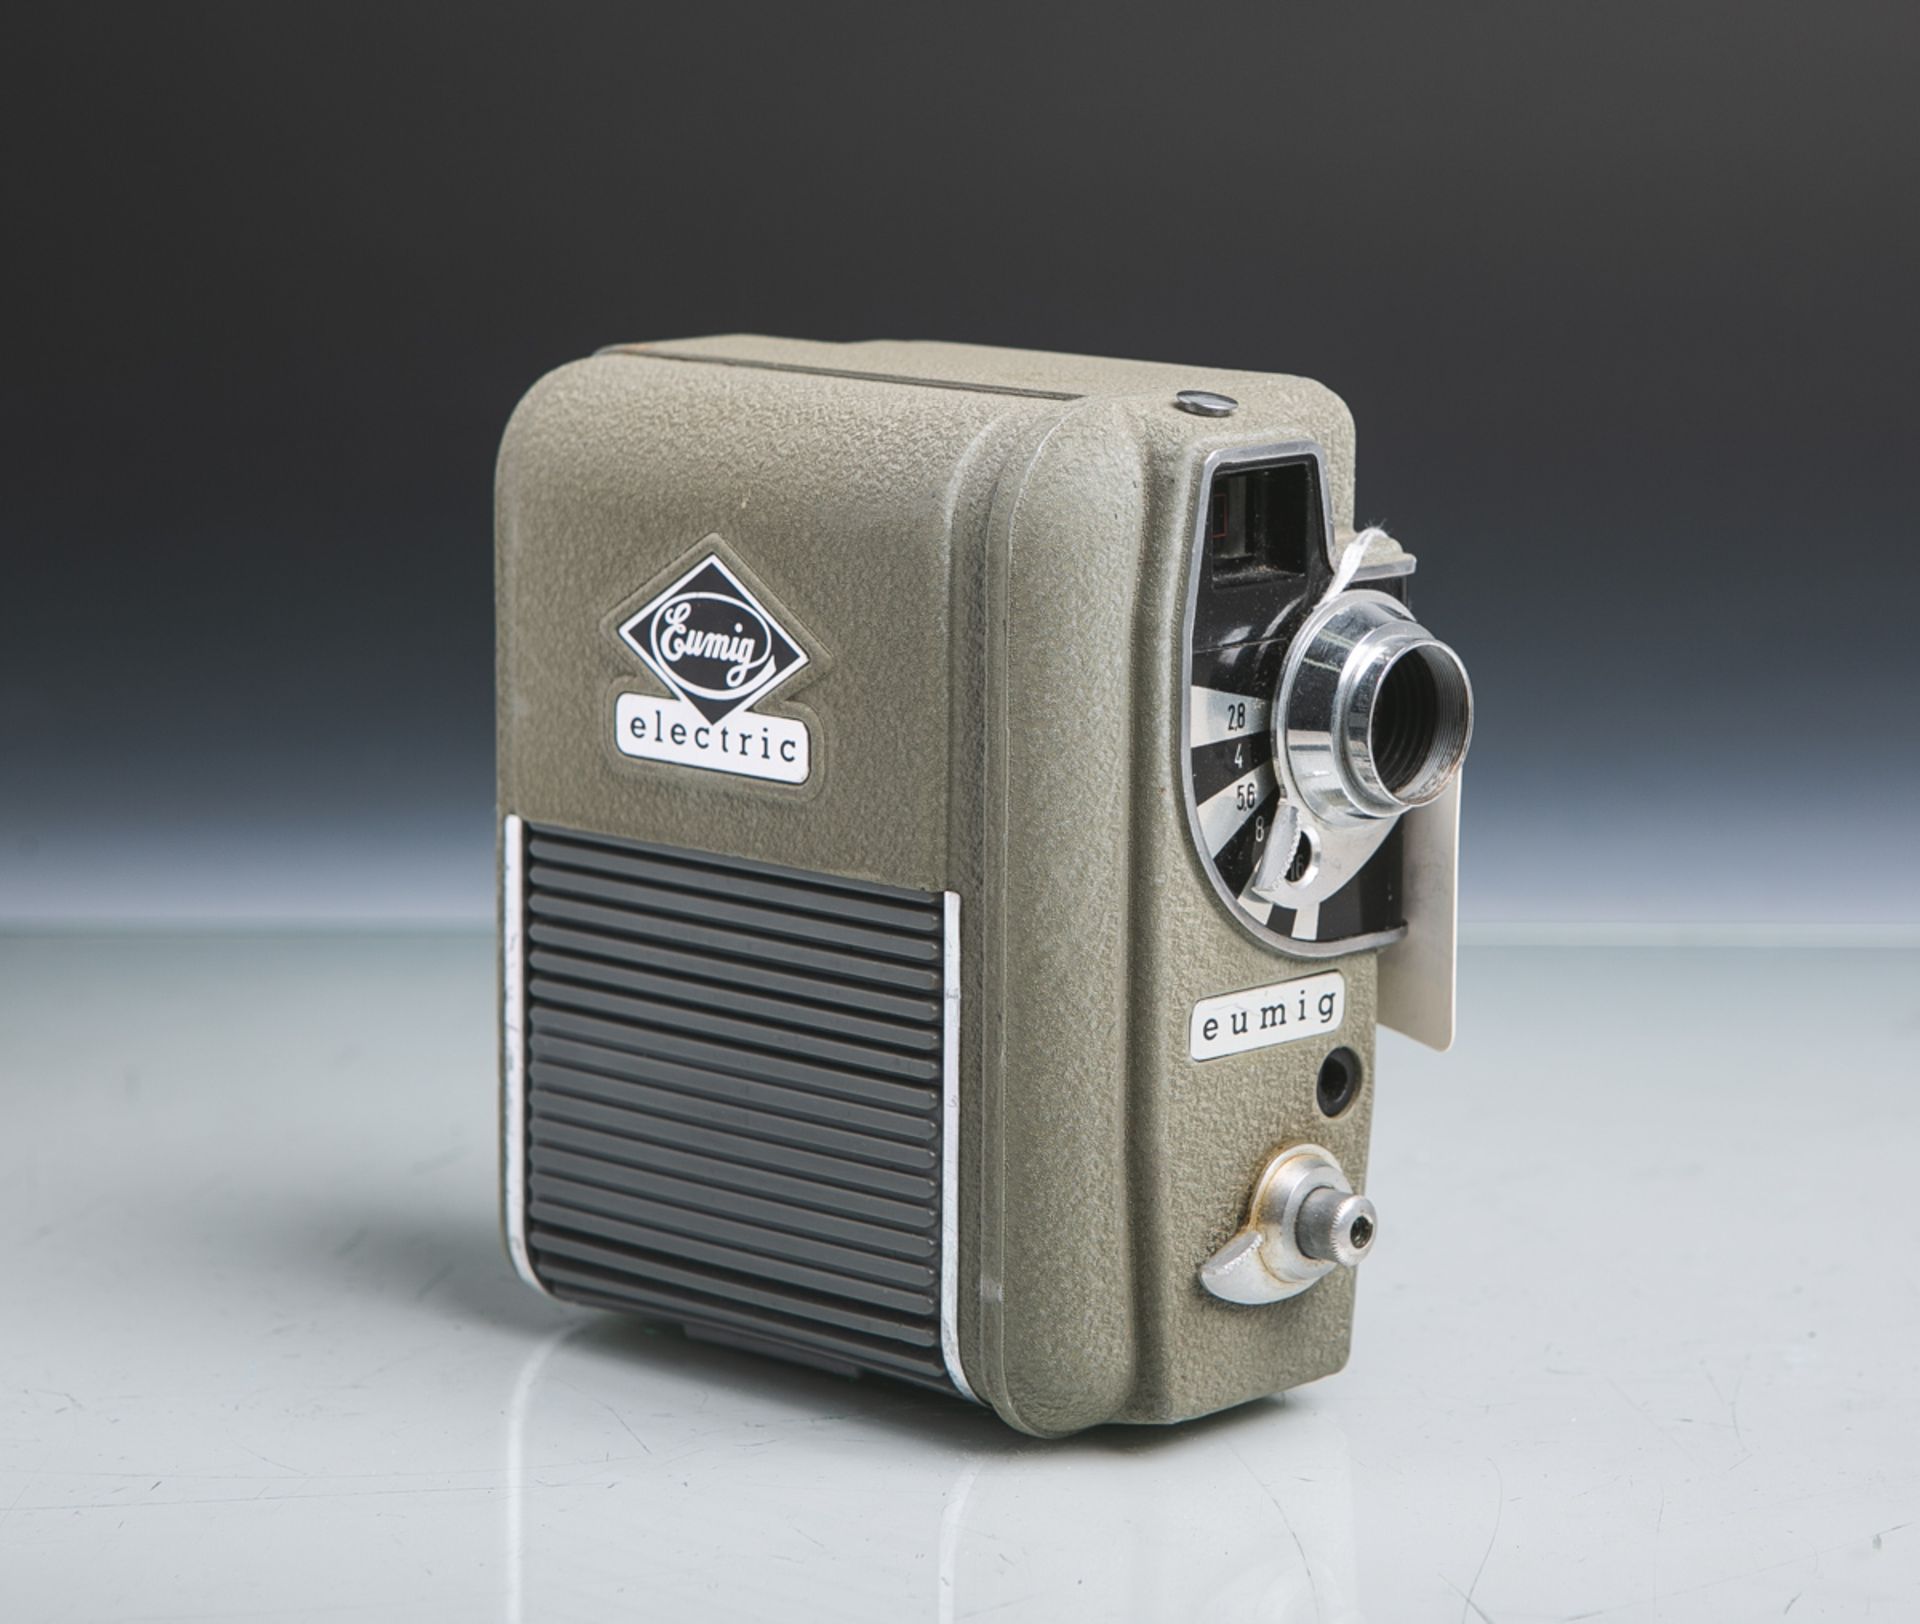 Filmkamera "Eumig electric" (Wien, 1955), 8 mm, Nr. 273543, Optik: "Eugon" von Eumig,